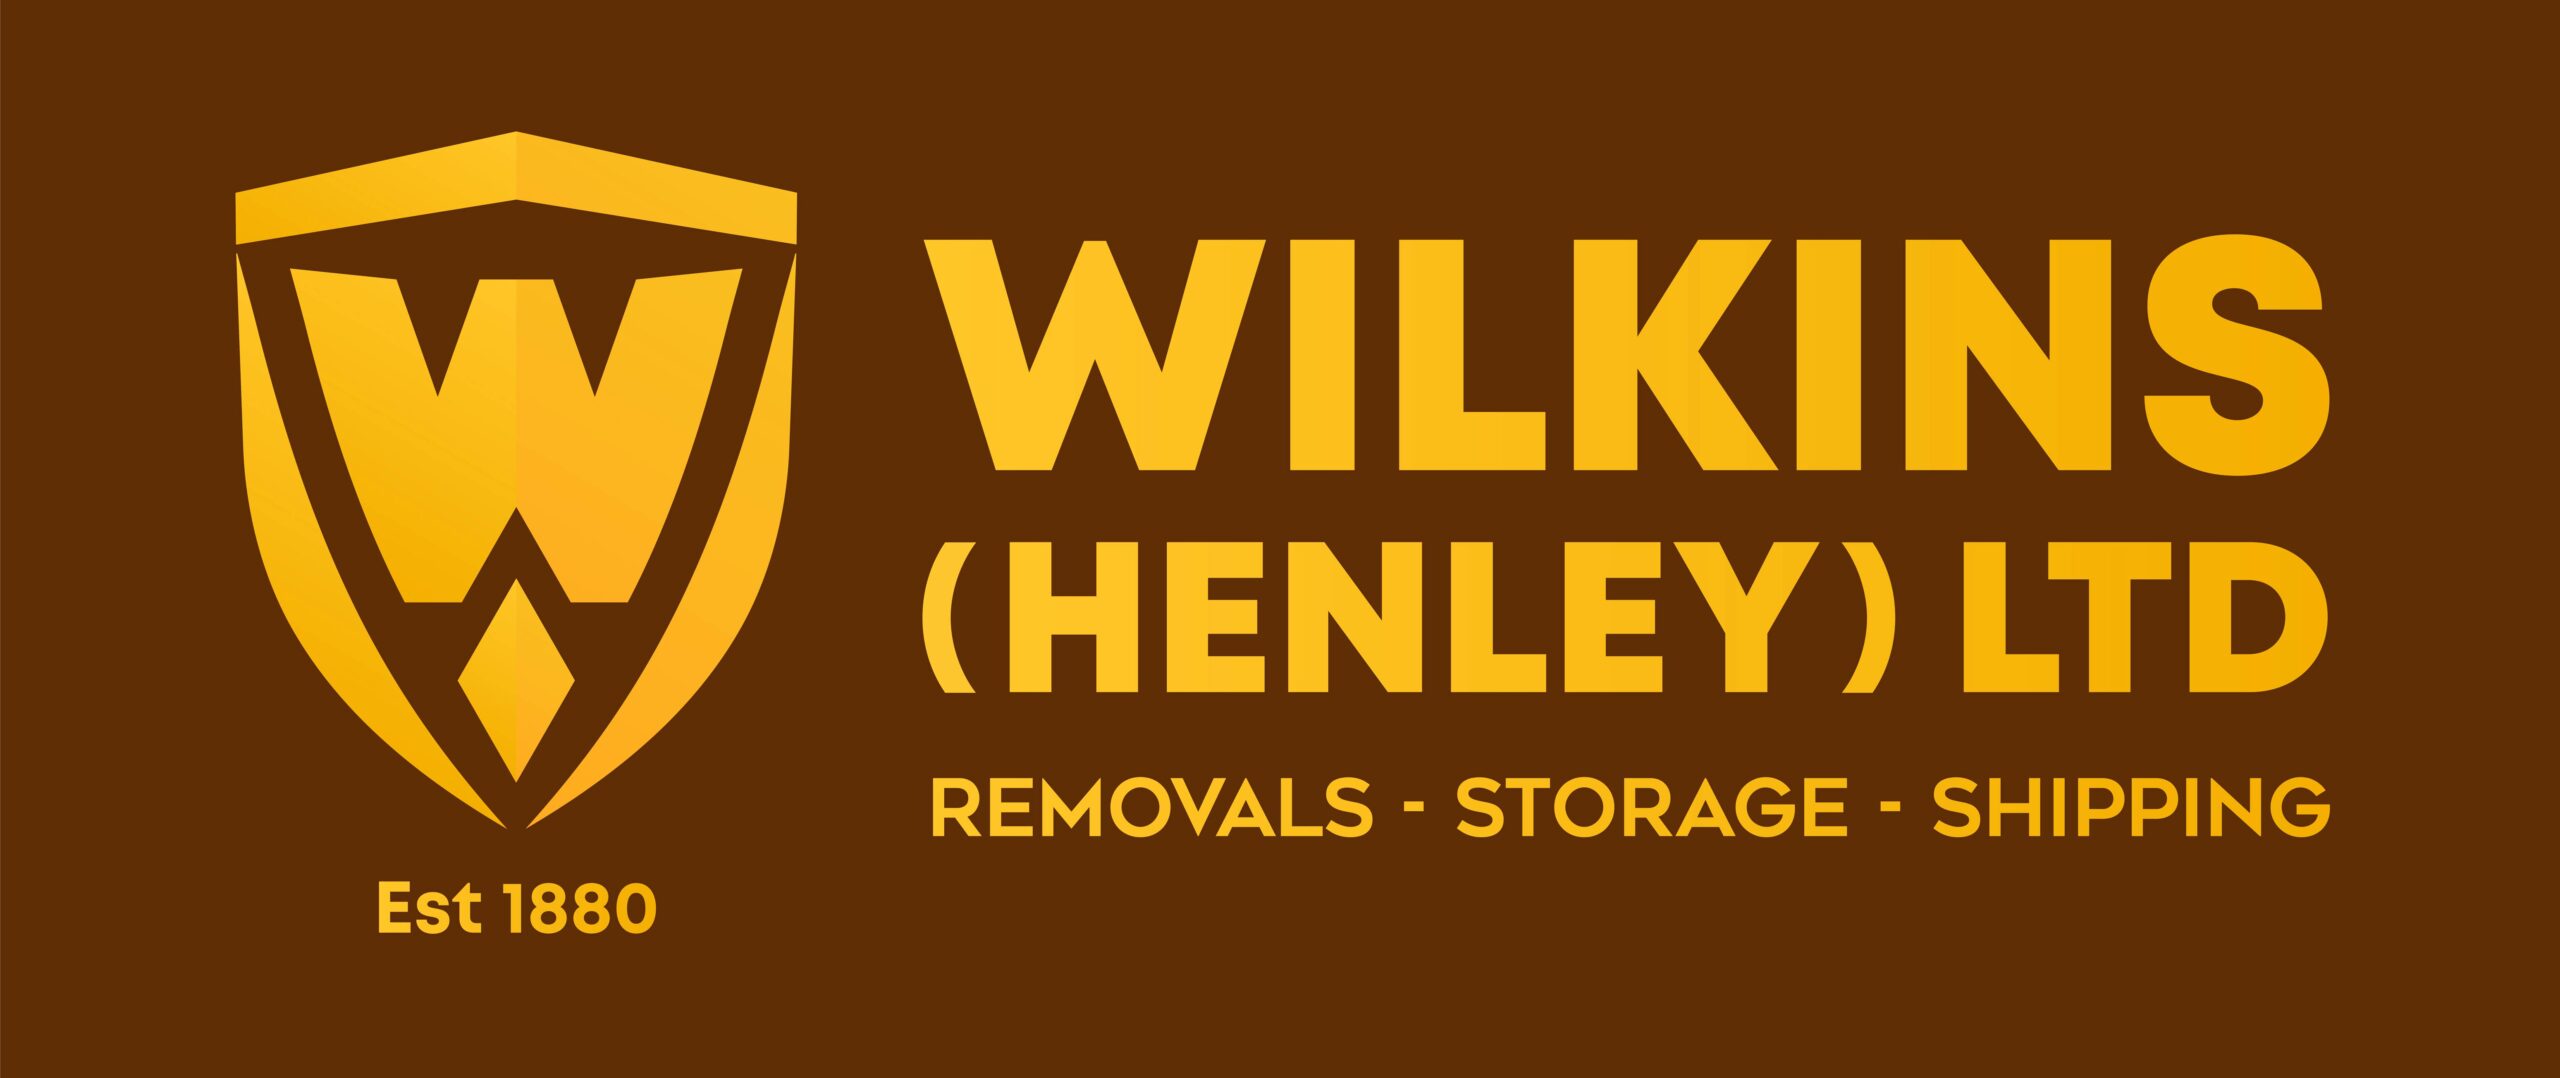 Wilkins Specialist Storage